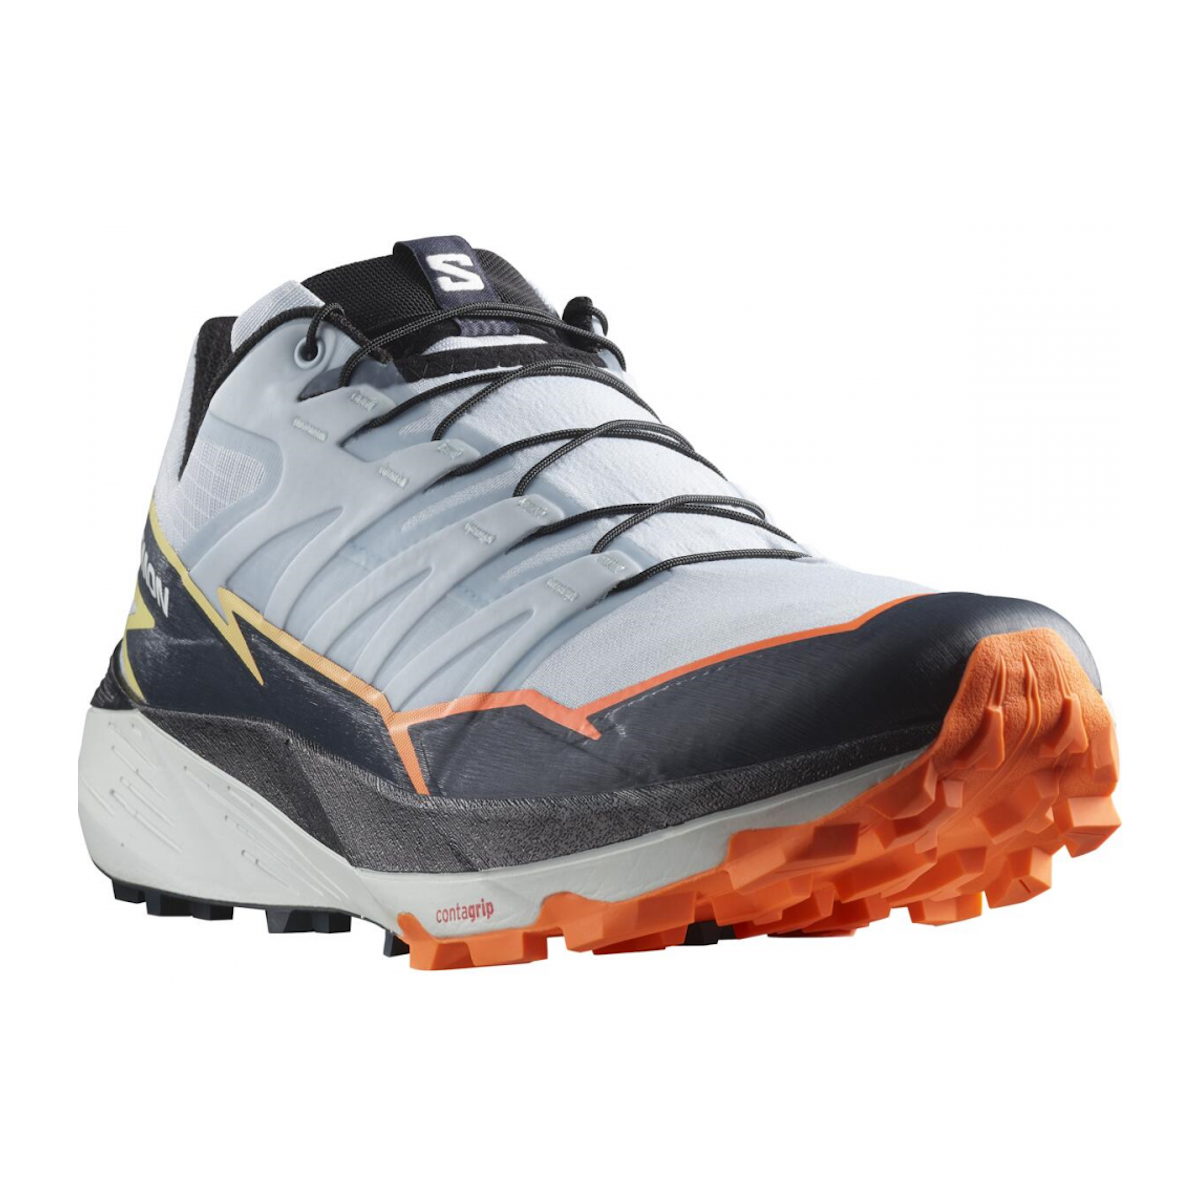 SALOMON THUNDERCROSS trail running shoes - grey/black/orange